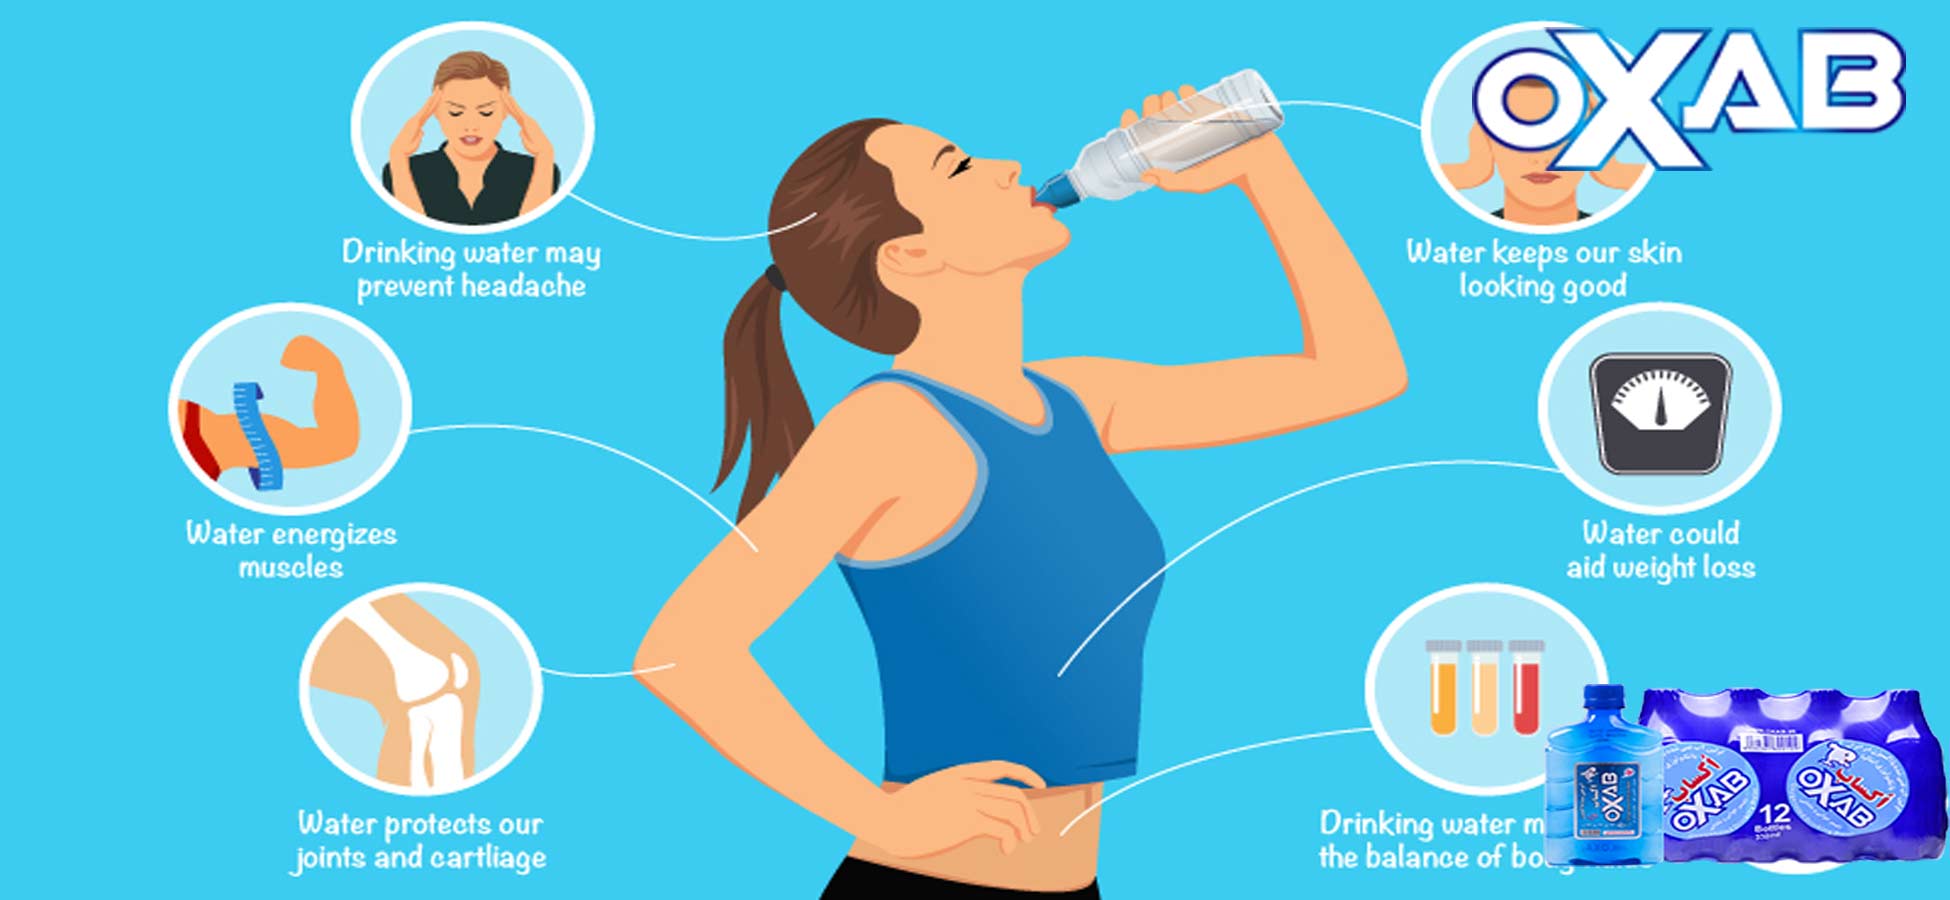 وقتی شروع به نوشیدن آب می کنید چه اتفاقی در بدن می افتد؟